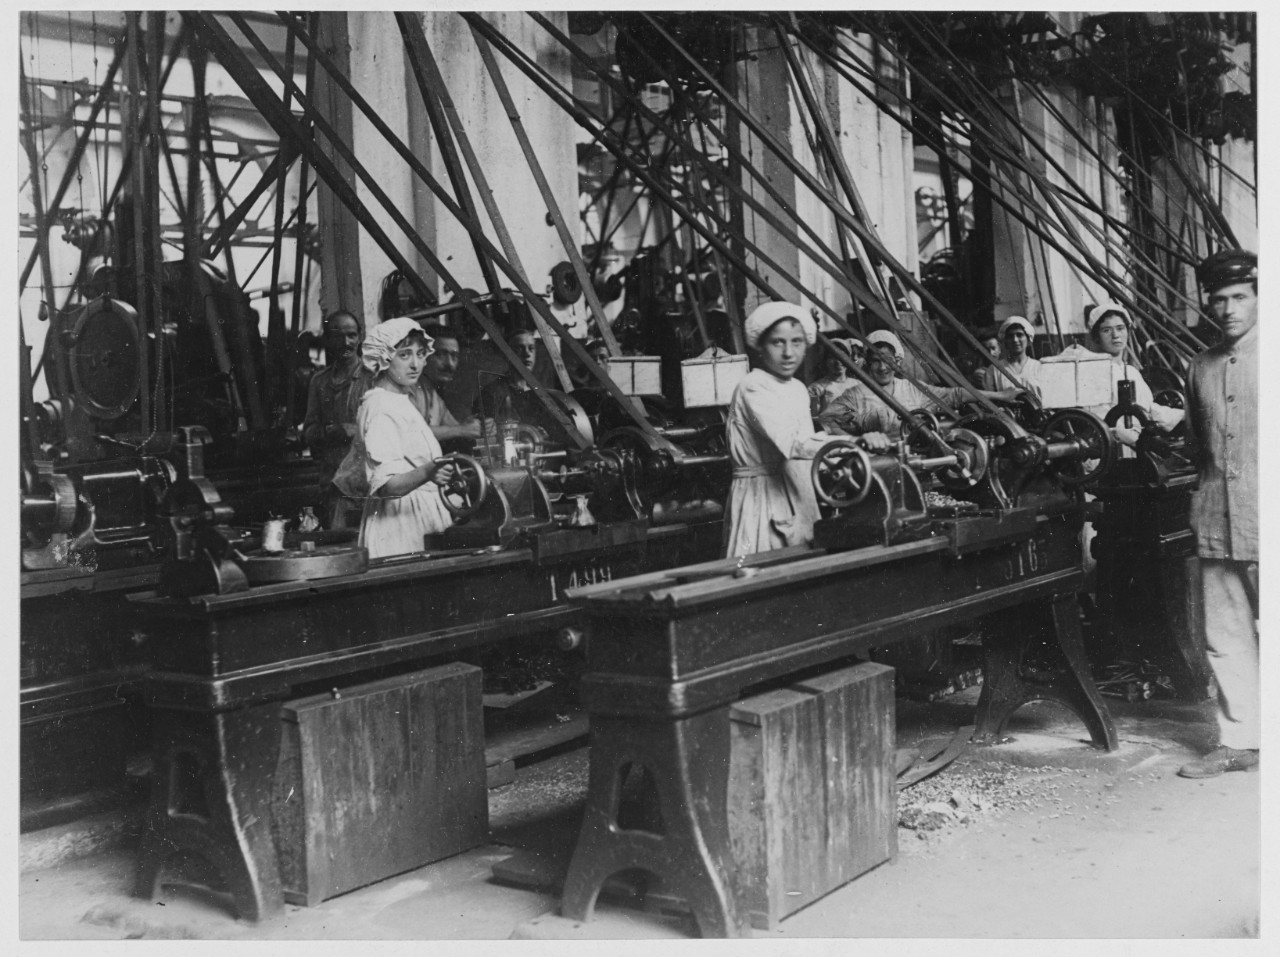 Munition girls at work at Ausaldo works.